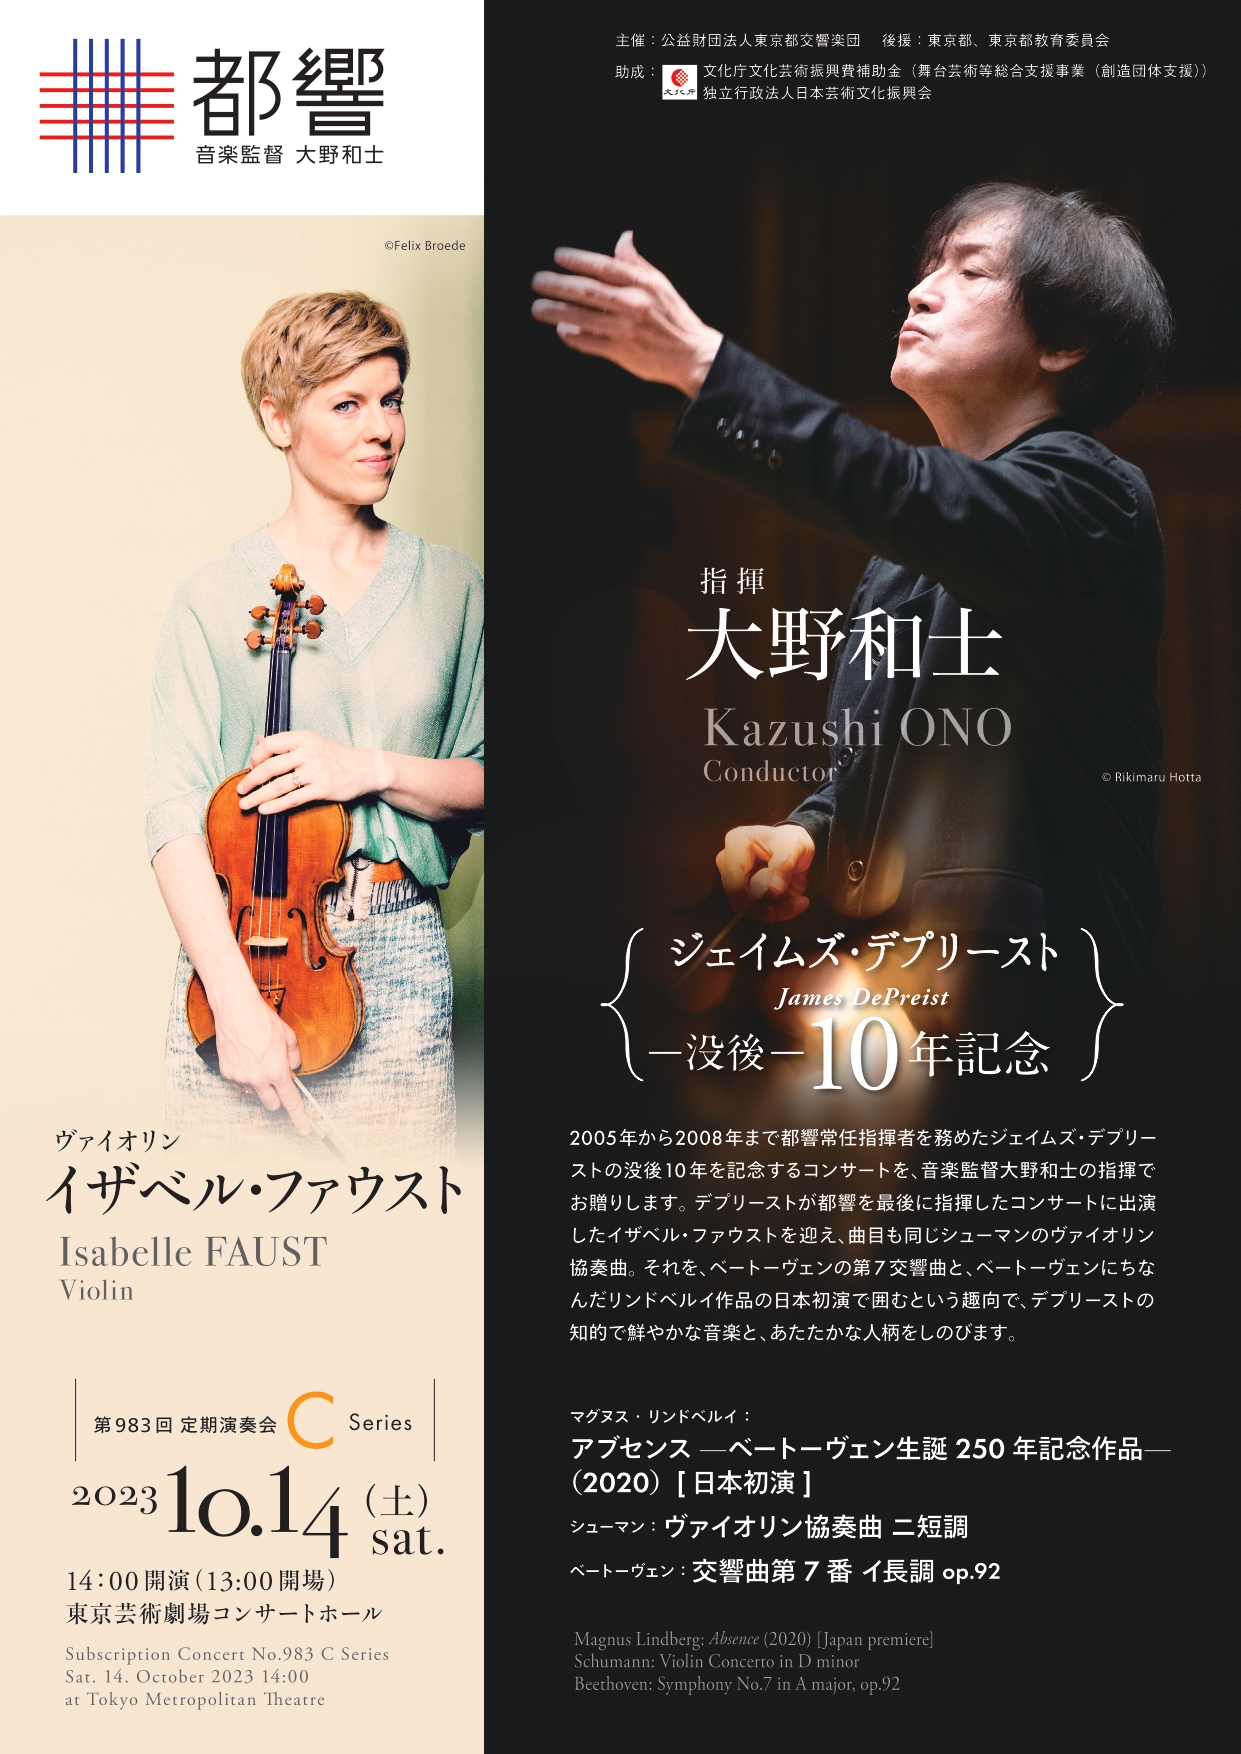 東京都交響楽団第983回定期演奏会Cシリーズのフライヤー画像